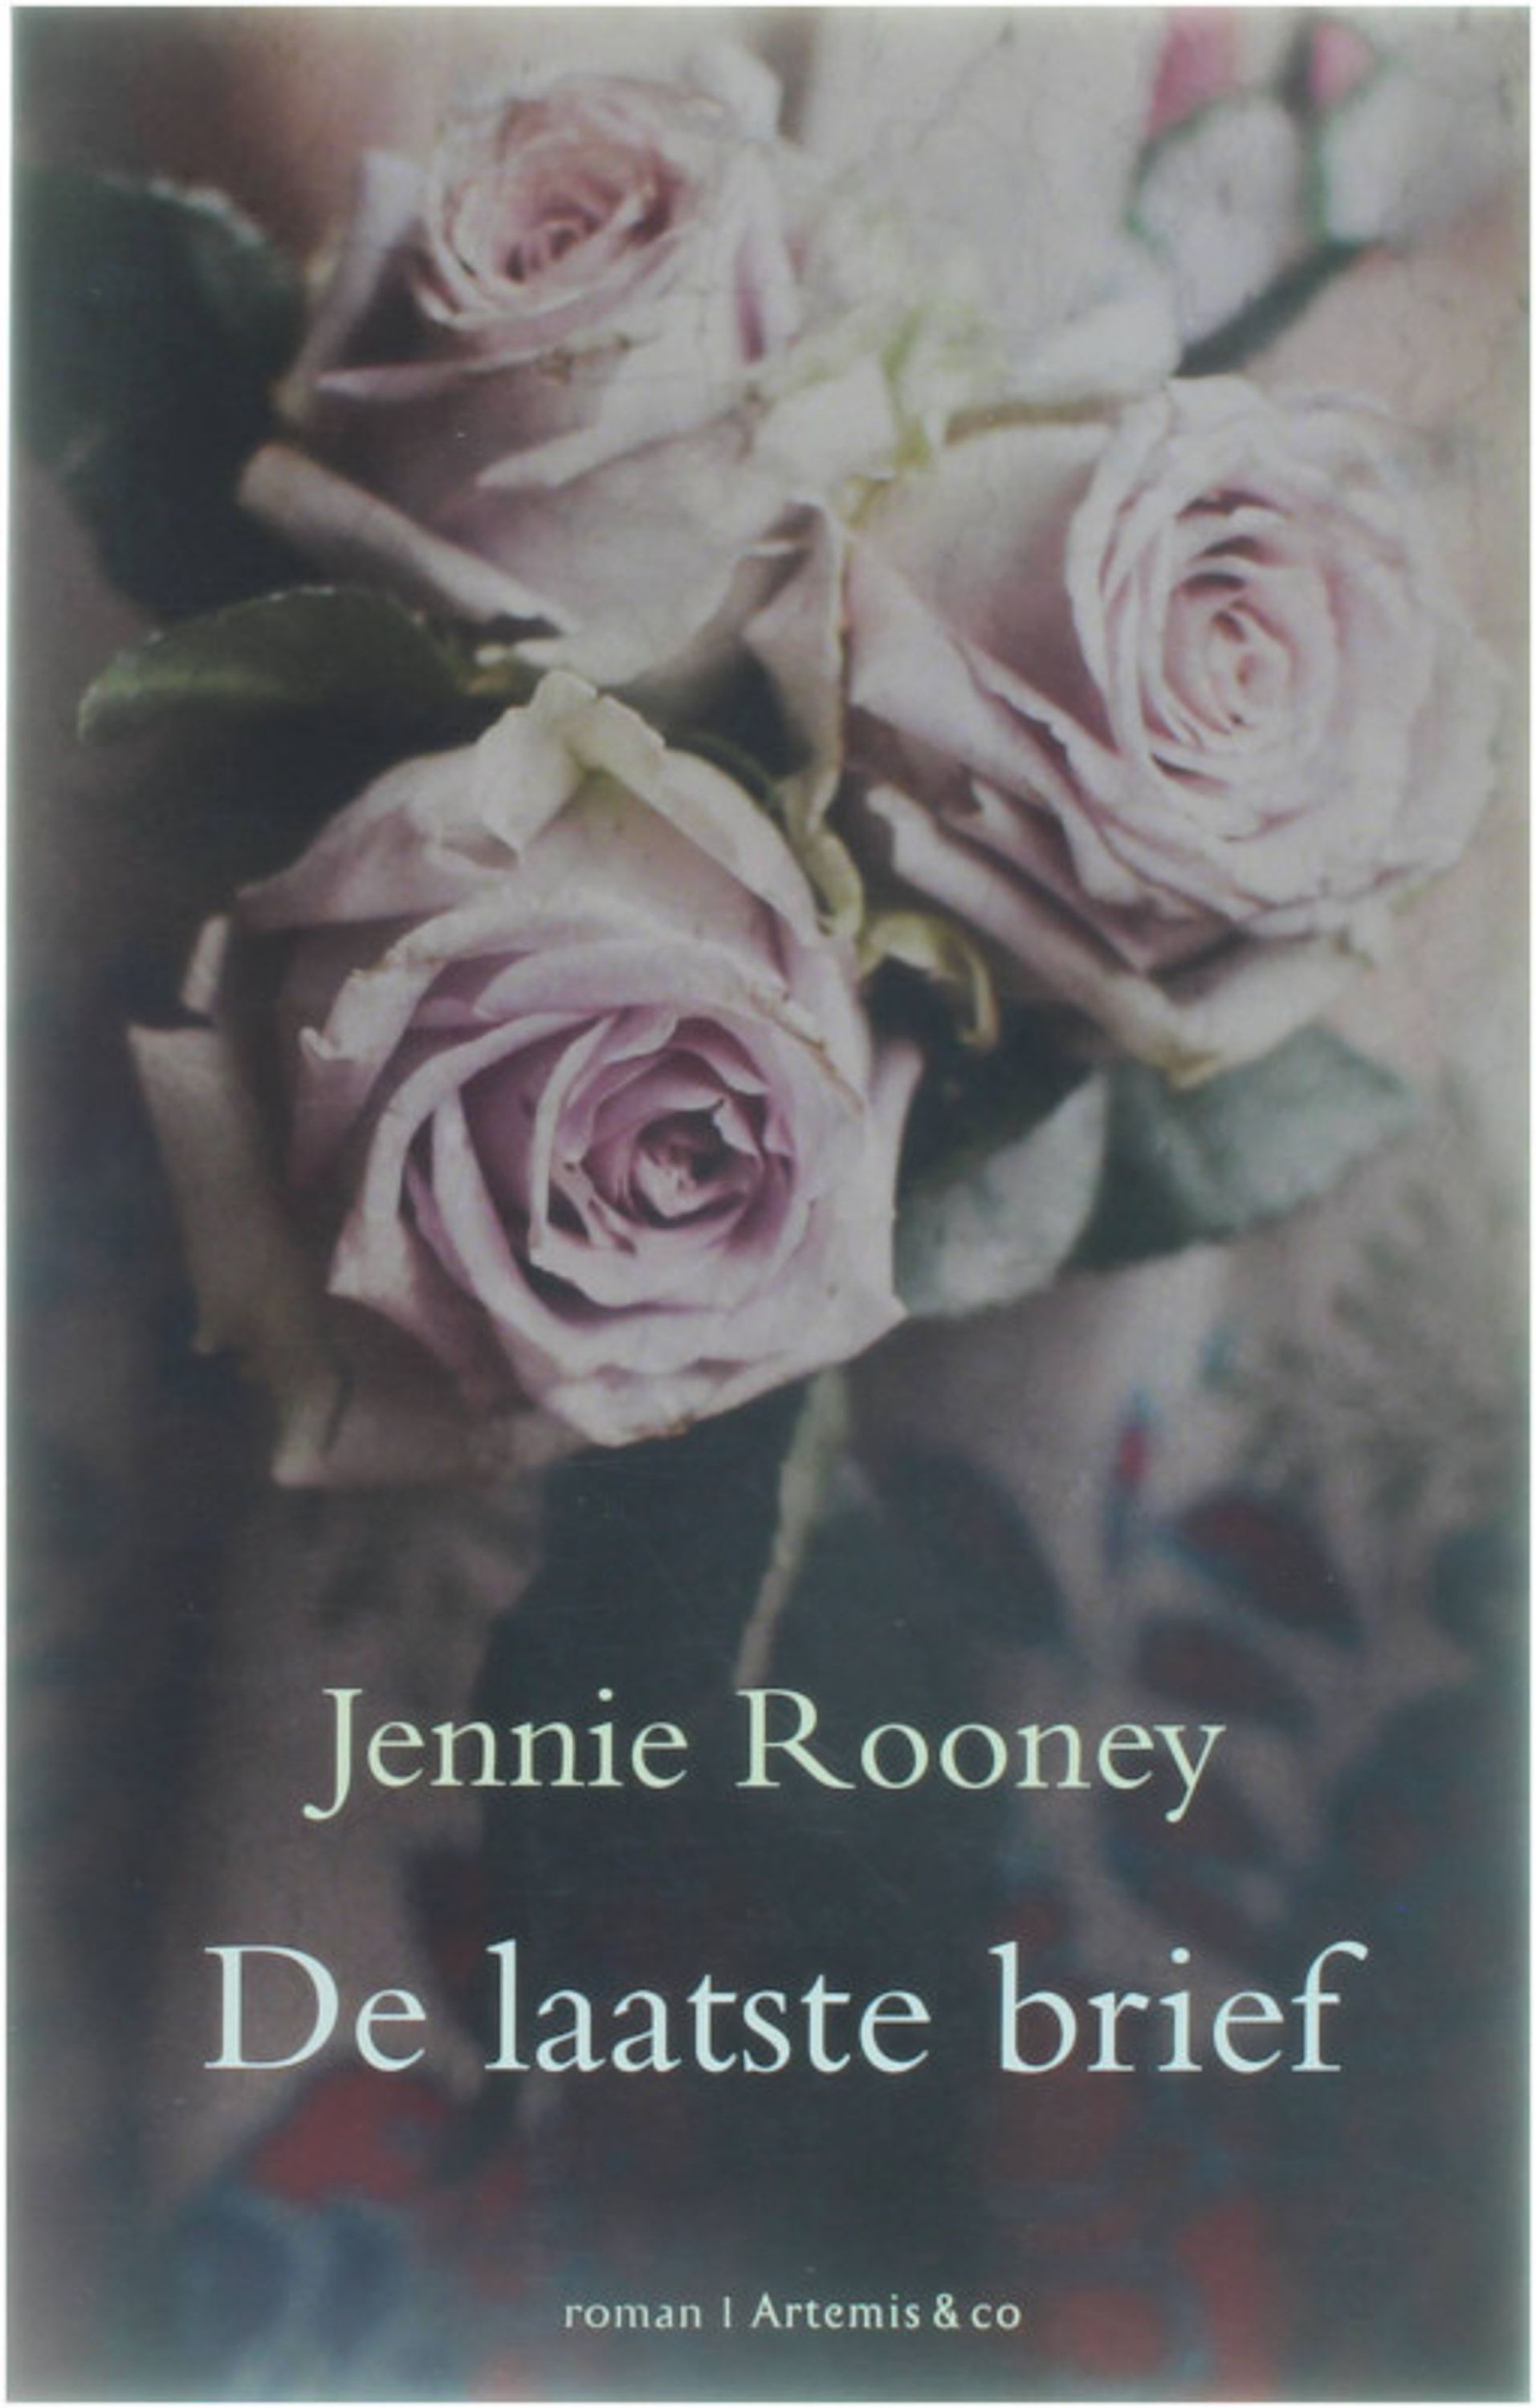 De laatste brief - Jennie Rooney